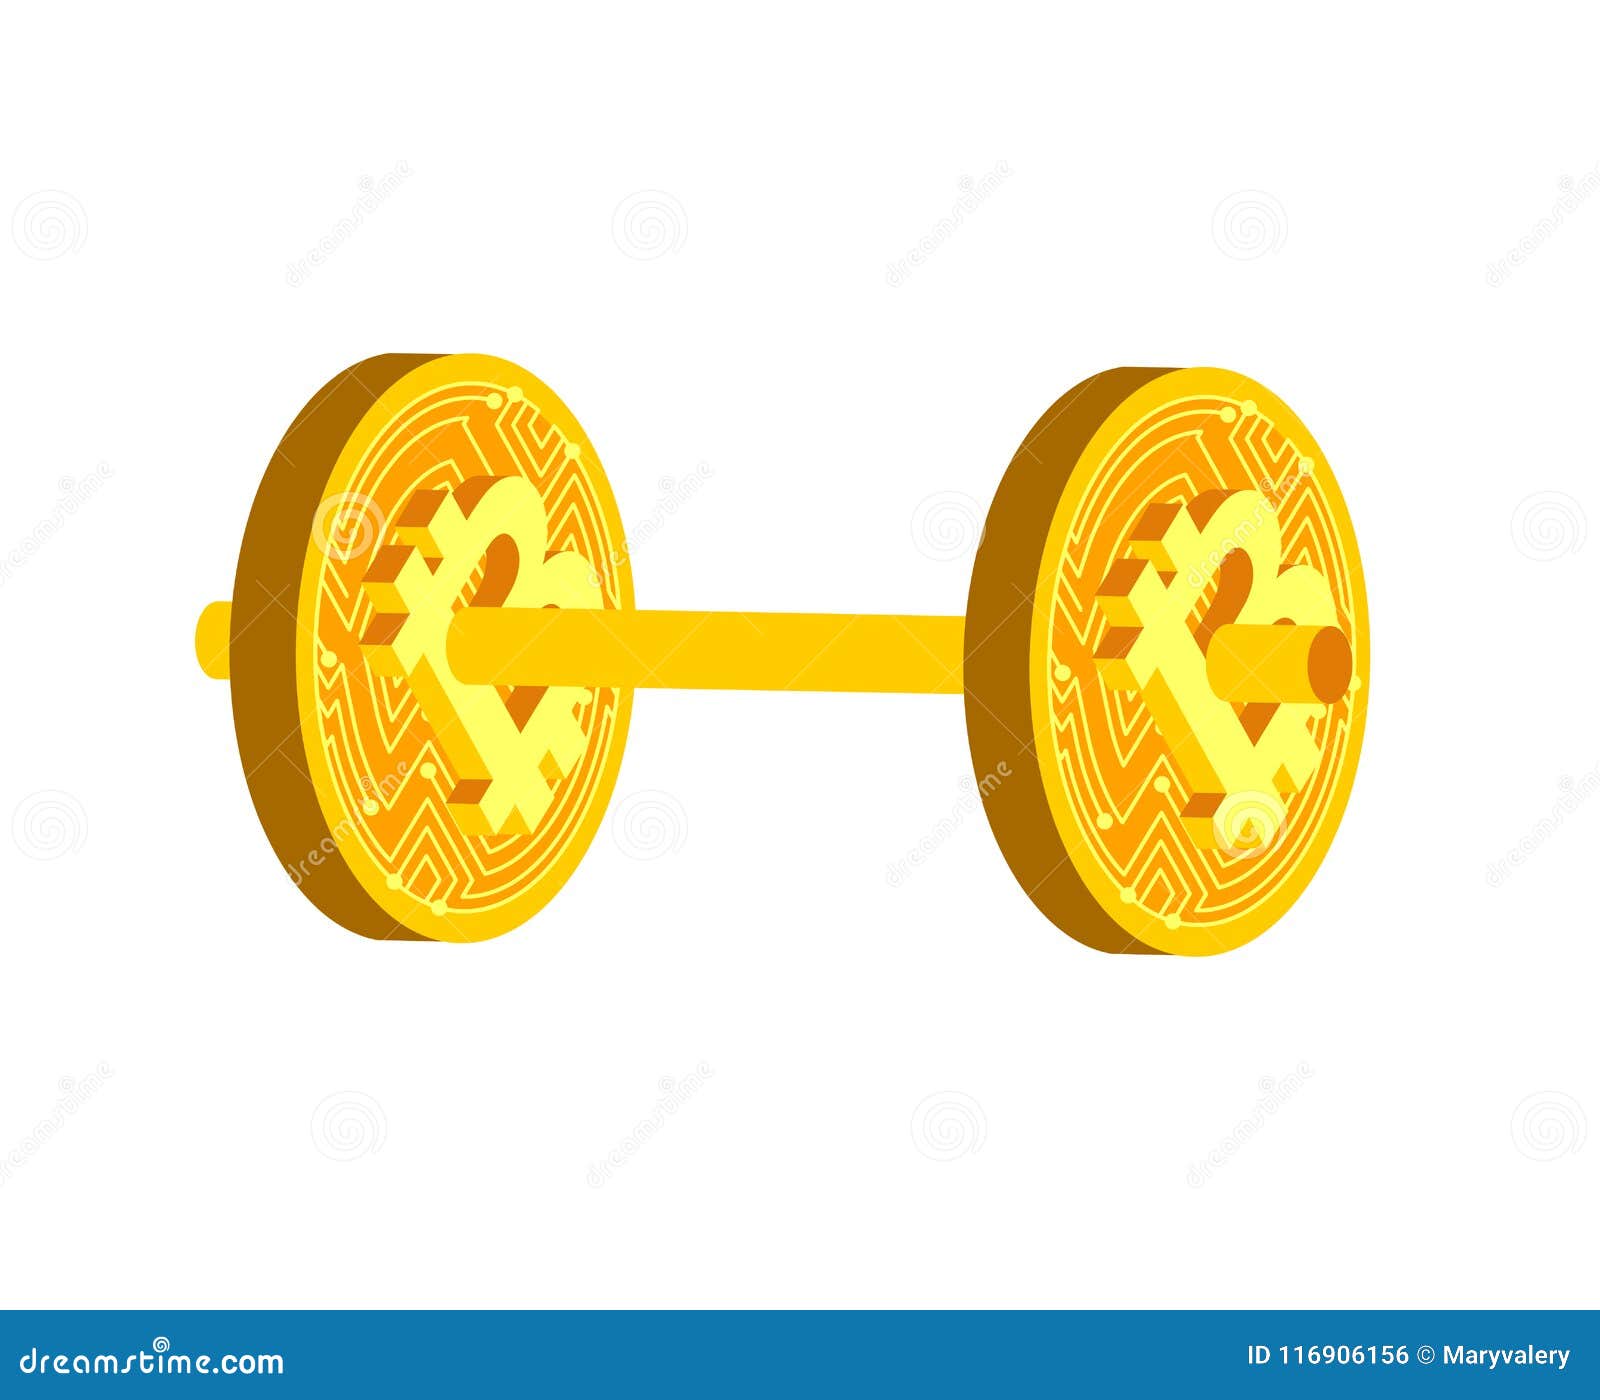 il bitcoin